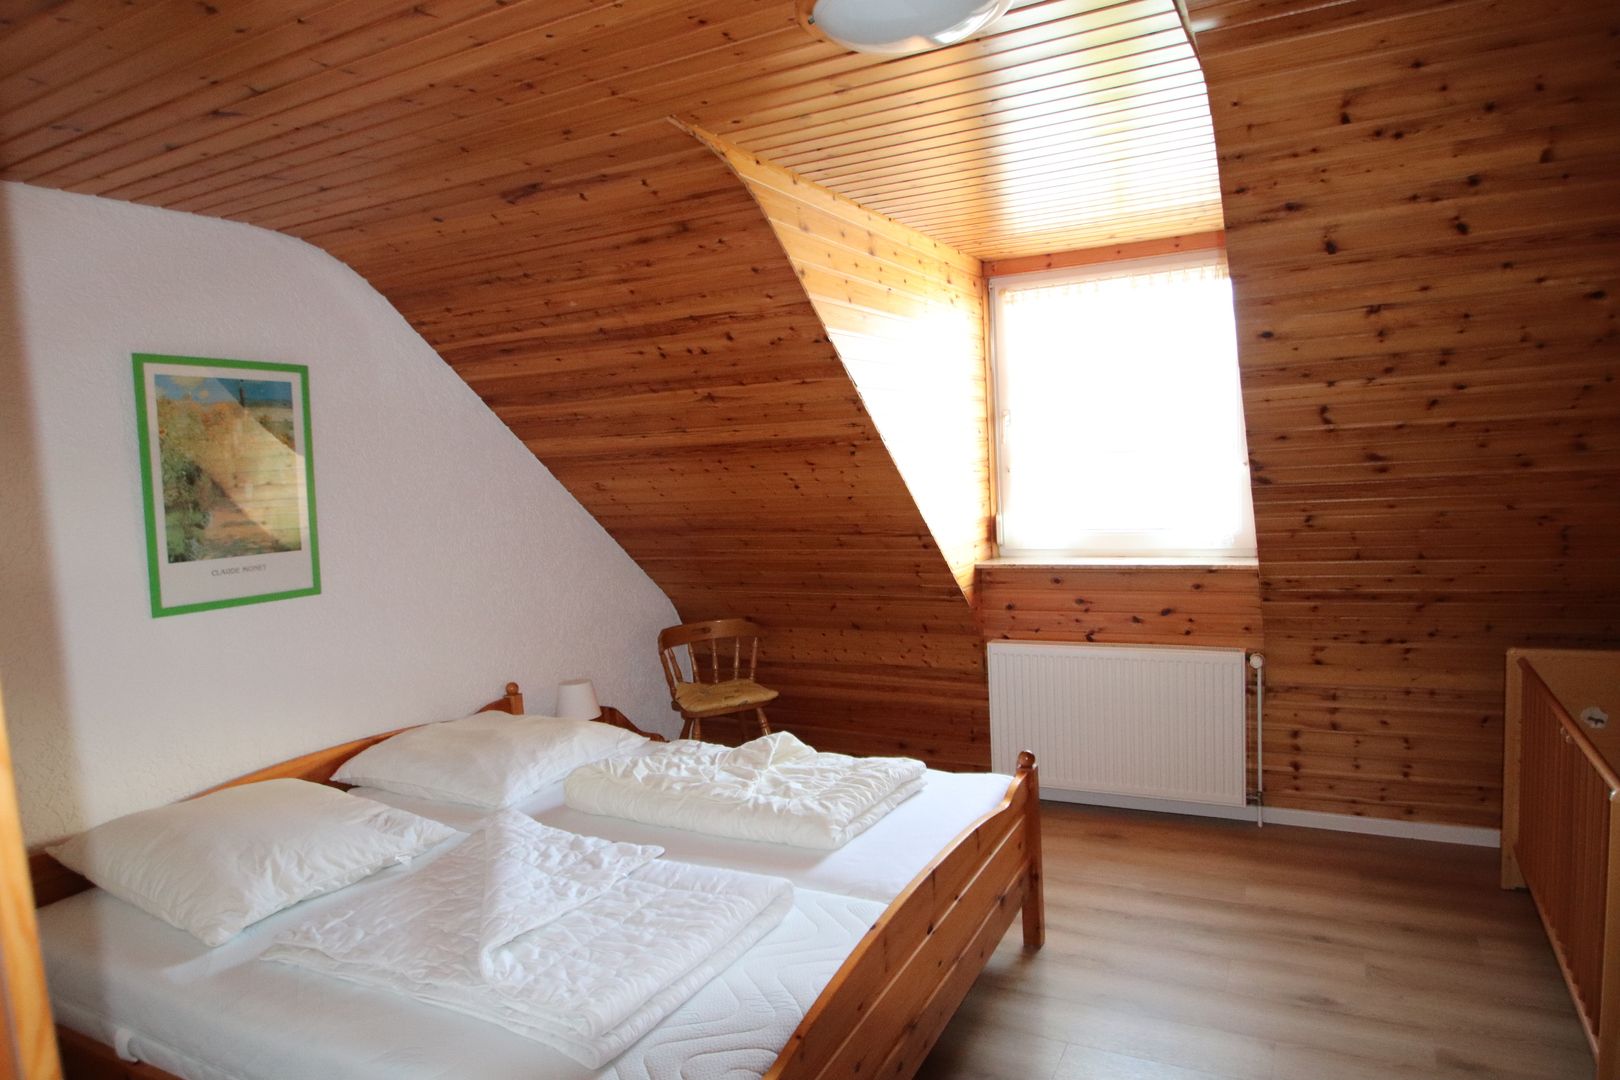 Schlafraum mit Doppelbett im Obergeschoss Ferienhaus Queller 13b Nordsee Friedrichskoog